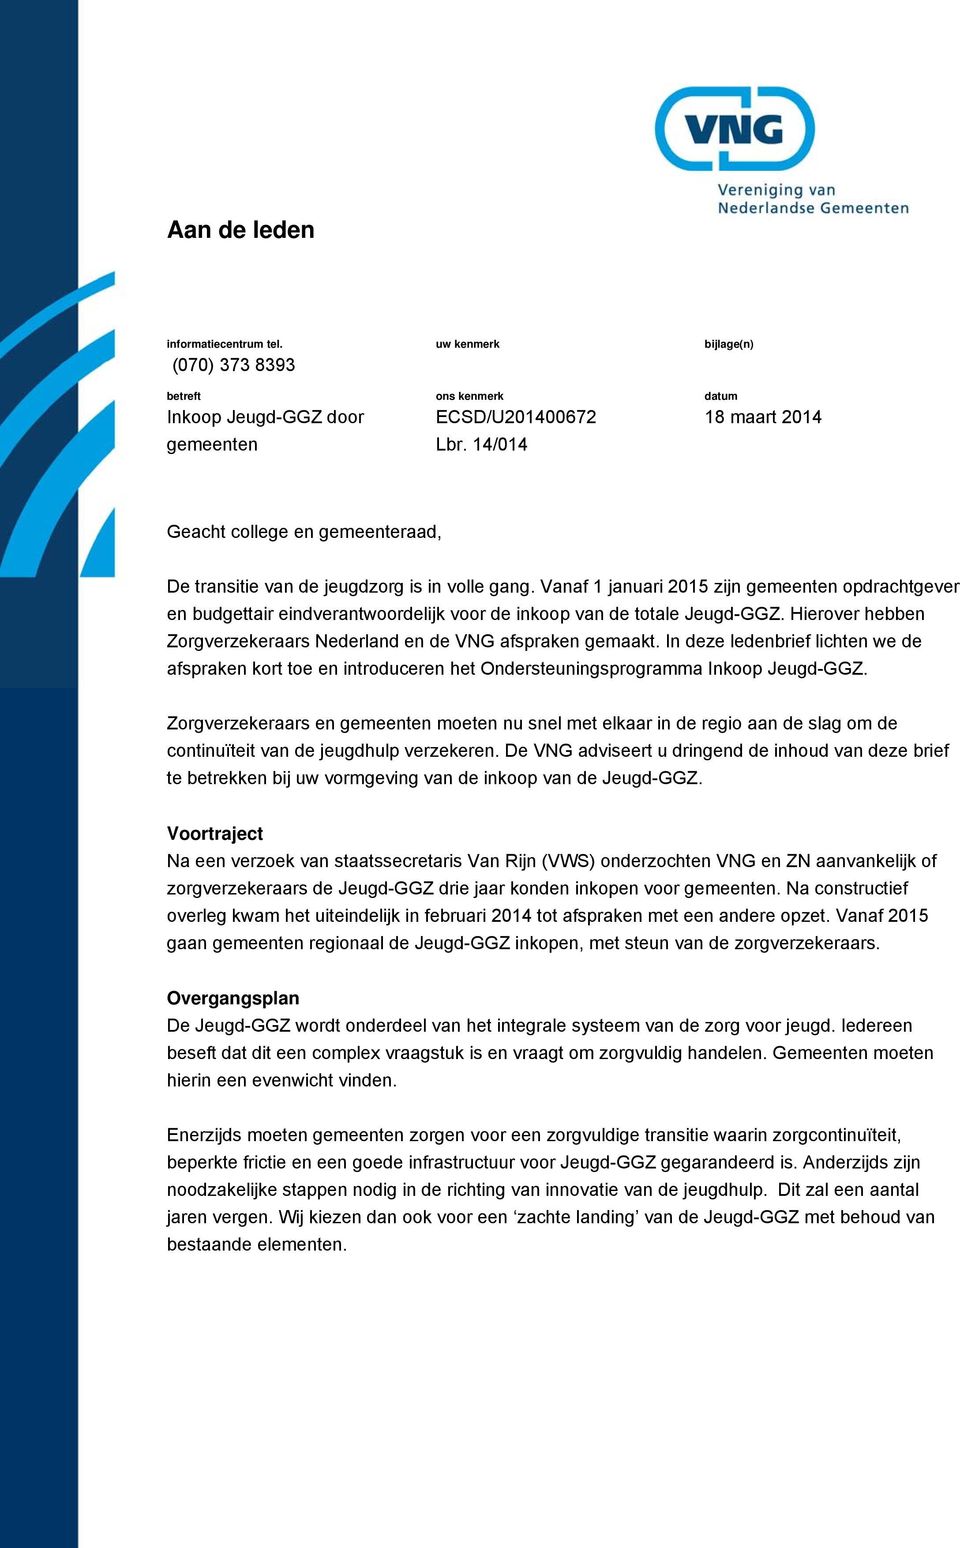 Vanaf 1 januari 2015 zijn gemeenten opdrachtgever en budgettair eindverantwoordelijk voor de inkoop van de totale Jeugd-GGZ. Hierover hebben Zorgverzekeraars Nederland en de VNG afspraken gemaakt.